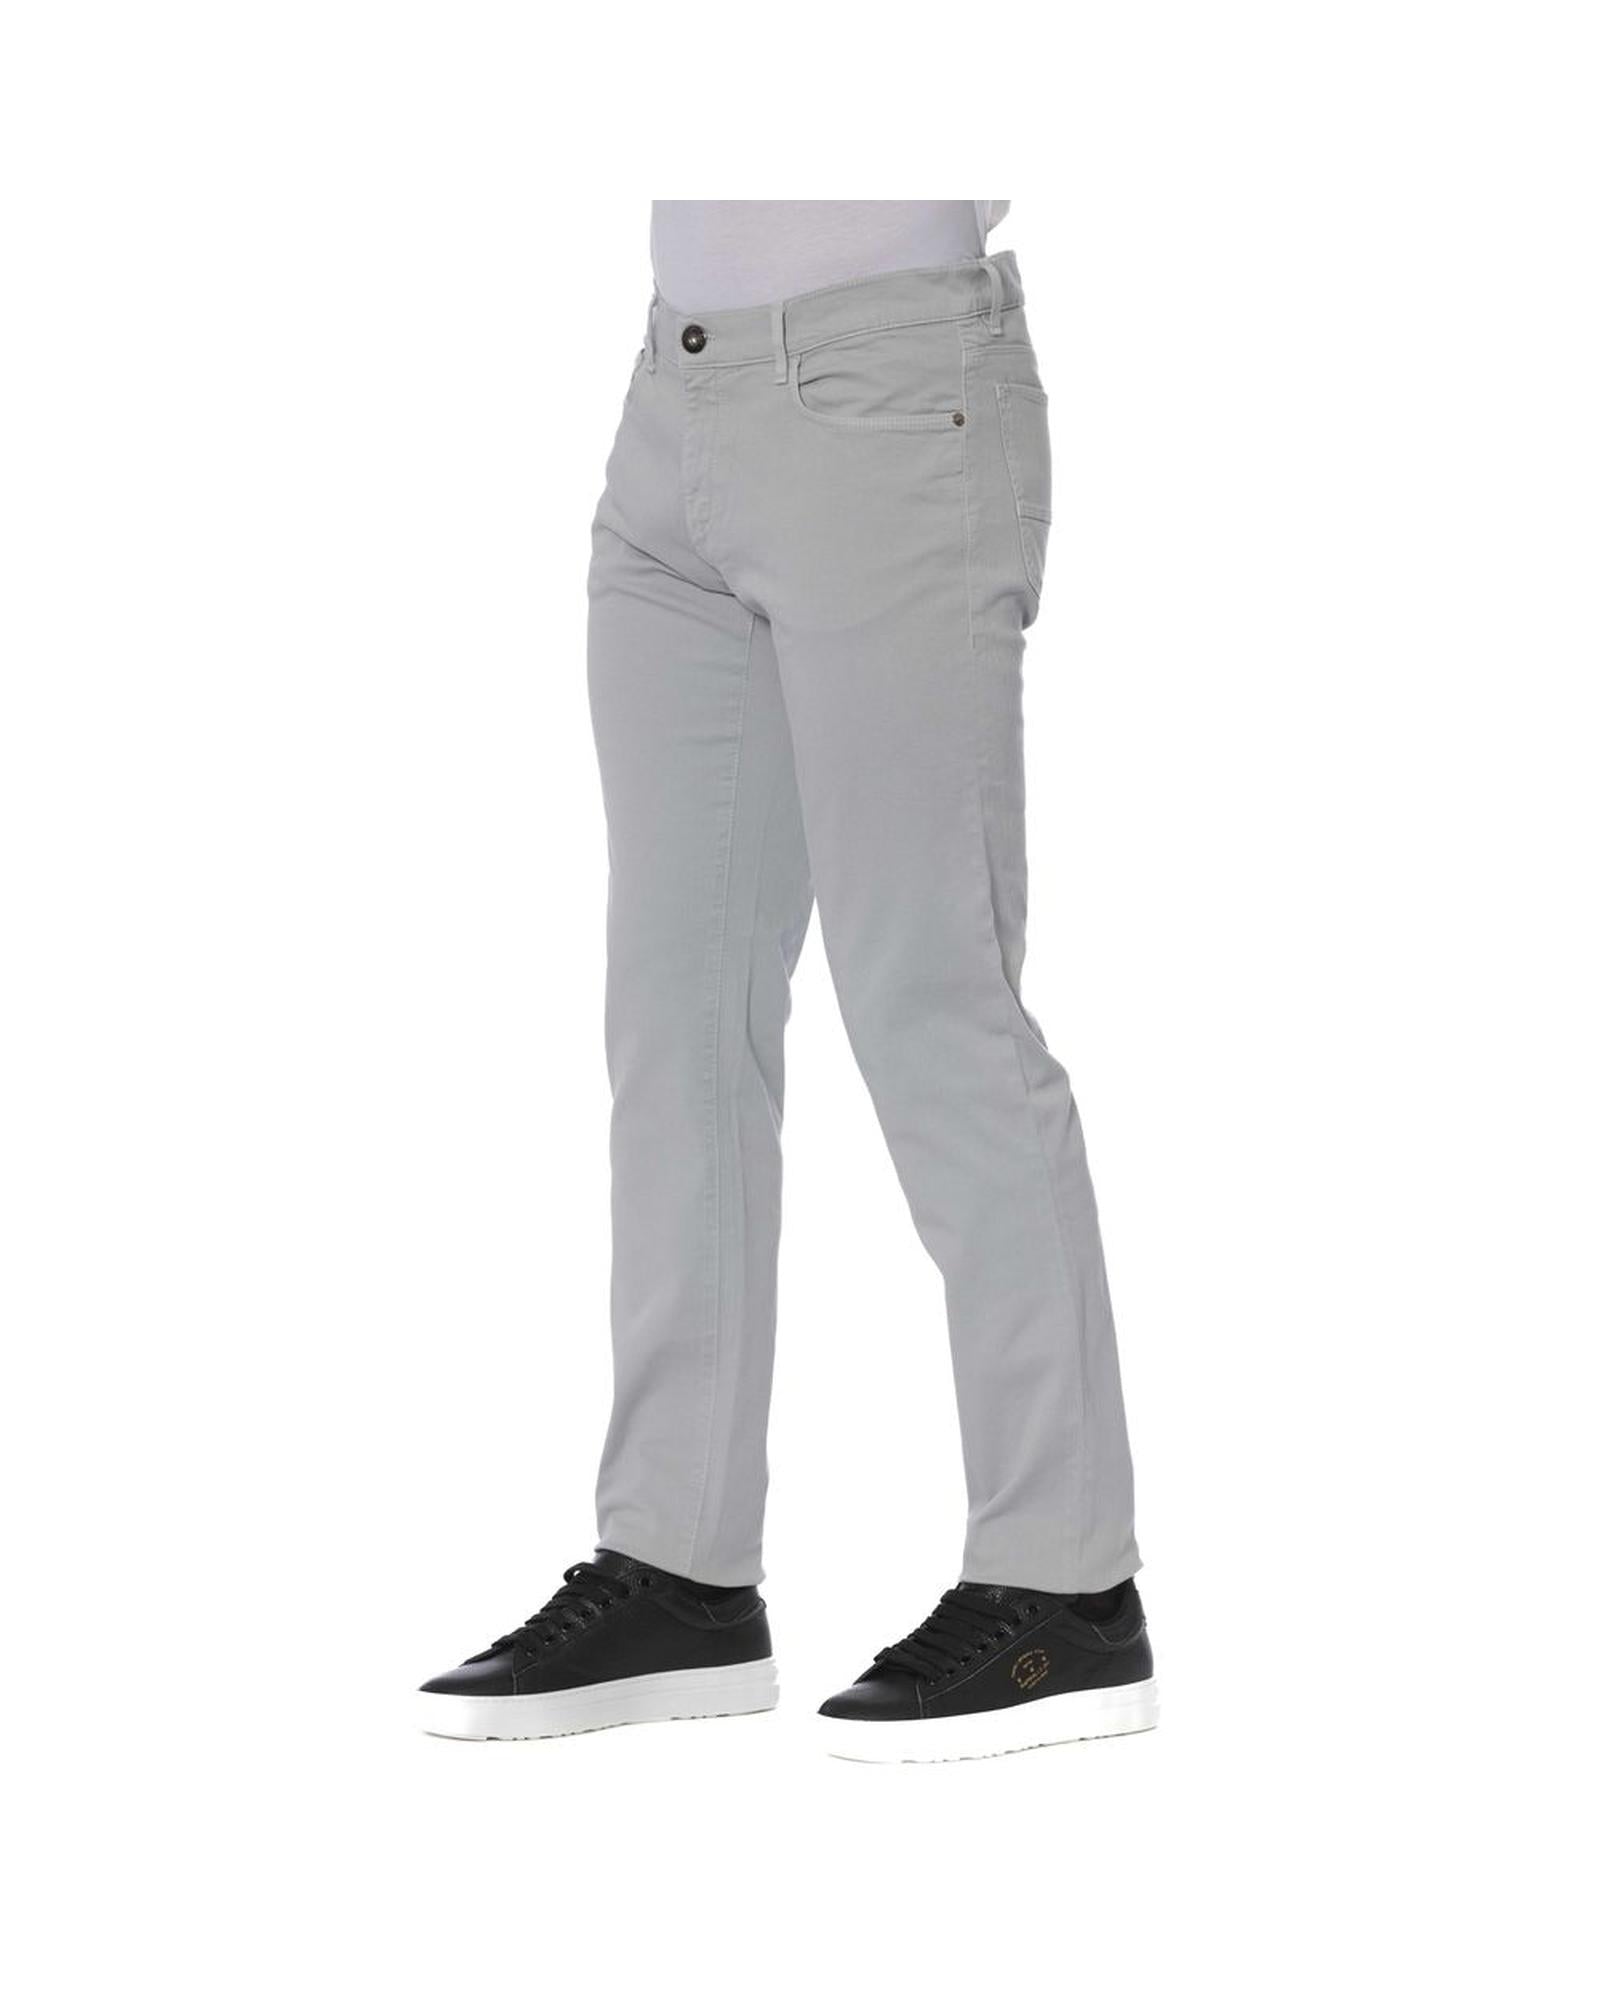 Men's Gray Cotton Jeans & Pant - W29 US